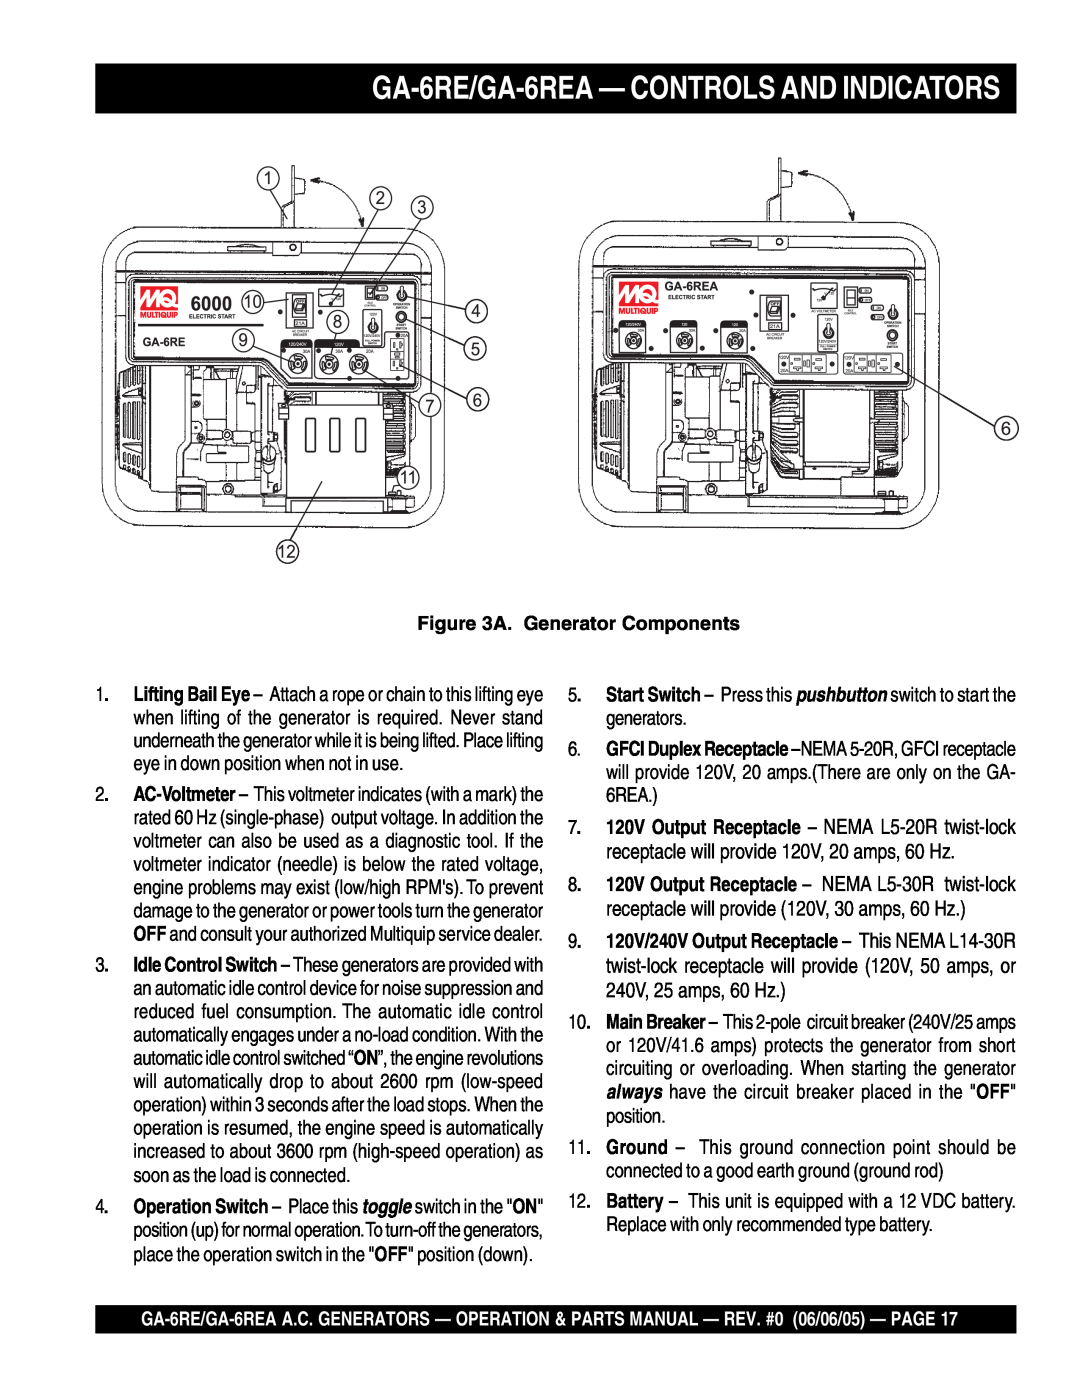 Multiquip manual GA-6RE/GA-6REA- CONTROLS AND INDICATORS, A. Generator Components 